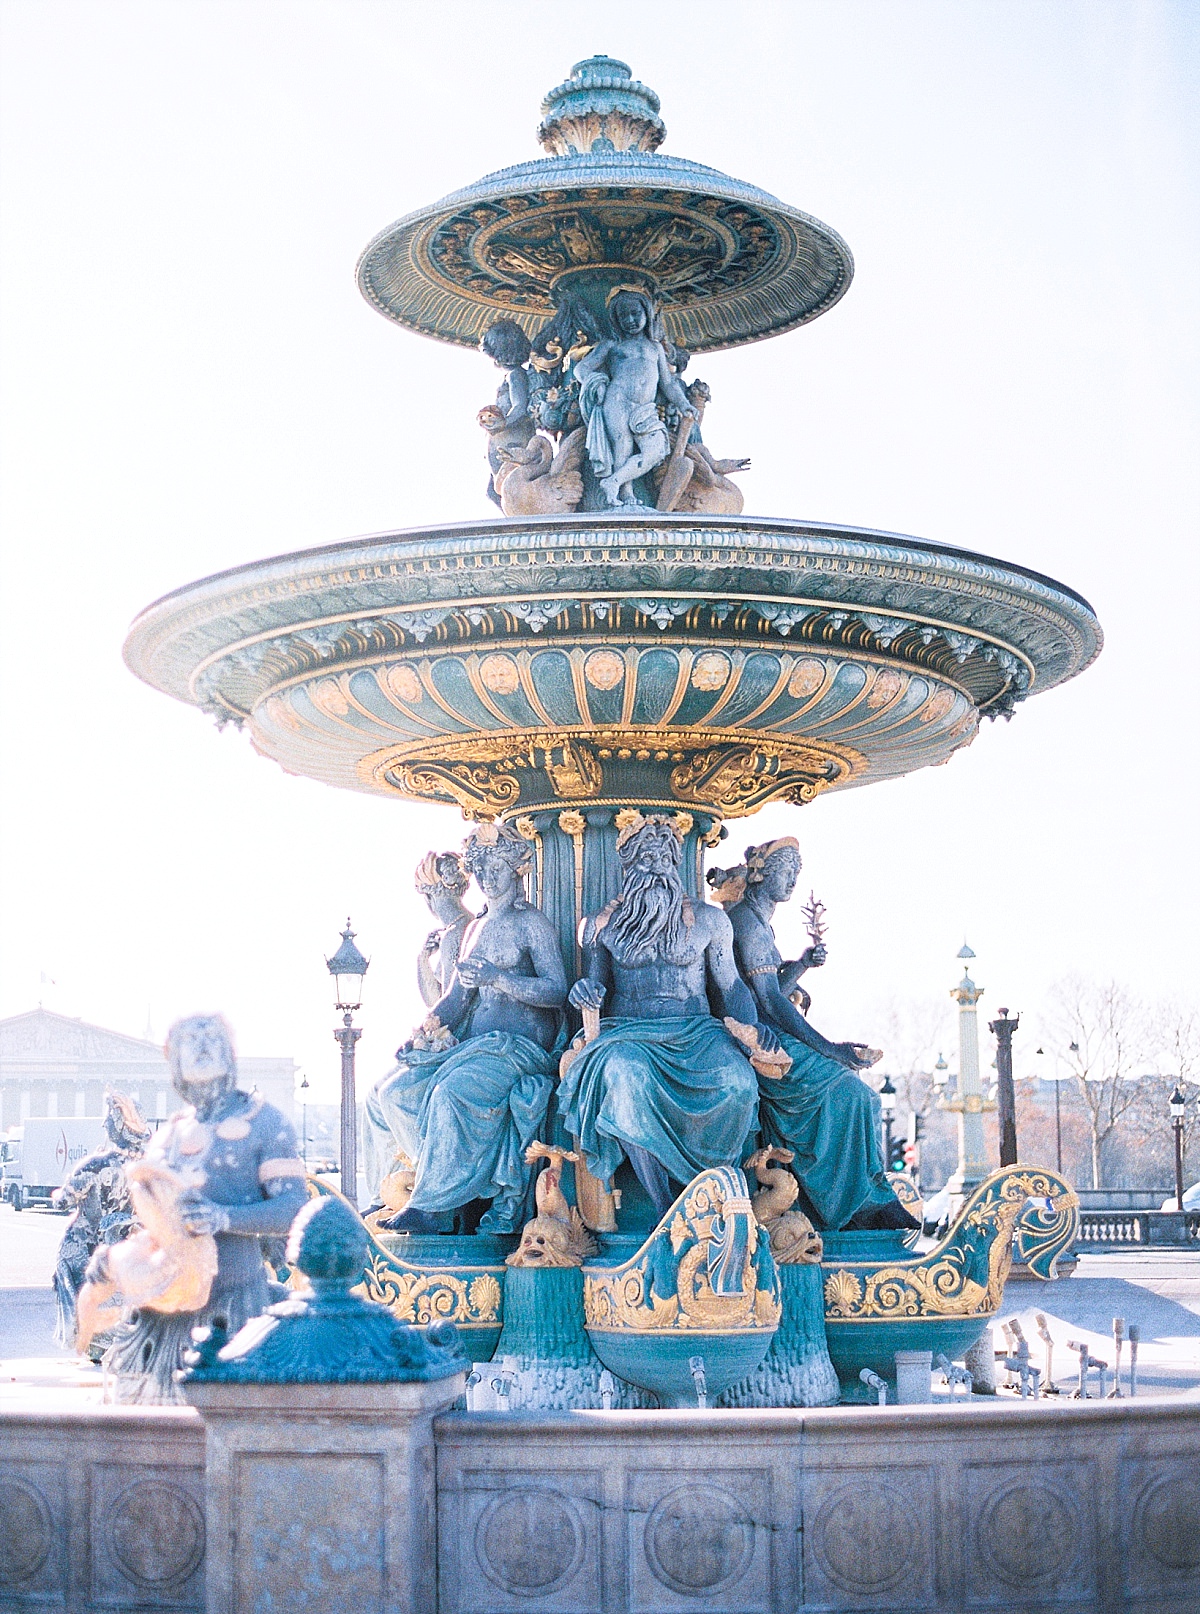 fountain in paris on Place de la concorde
